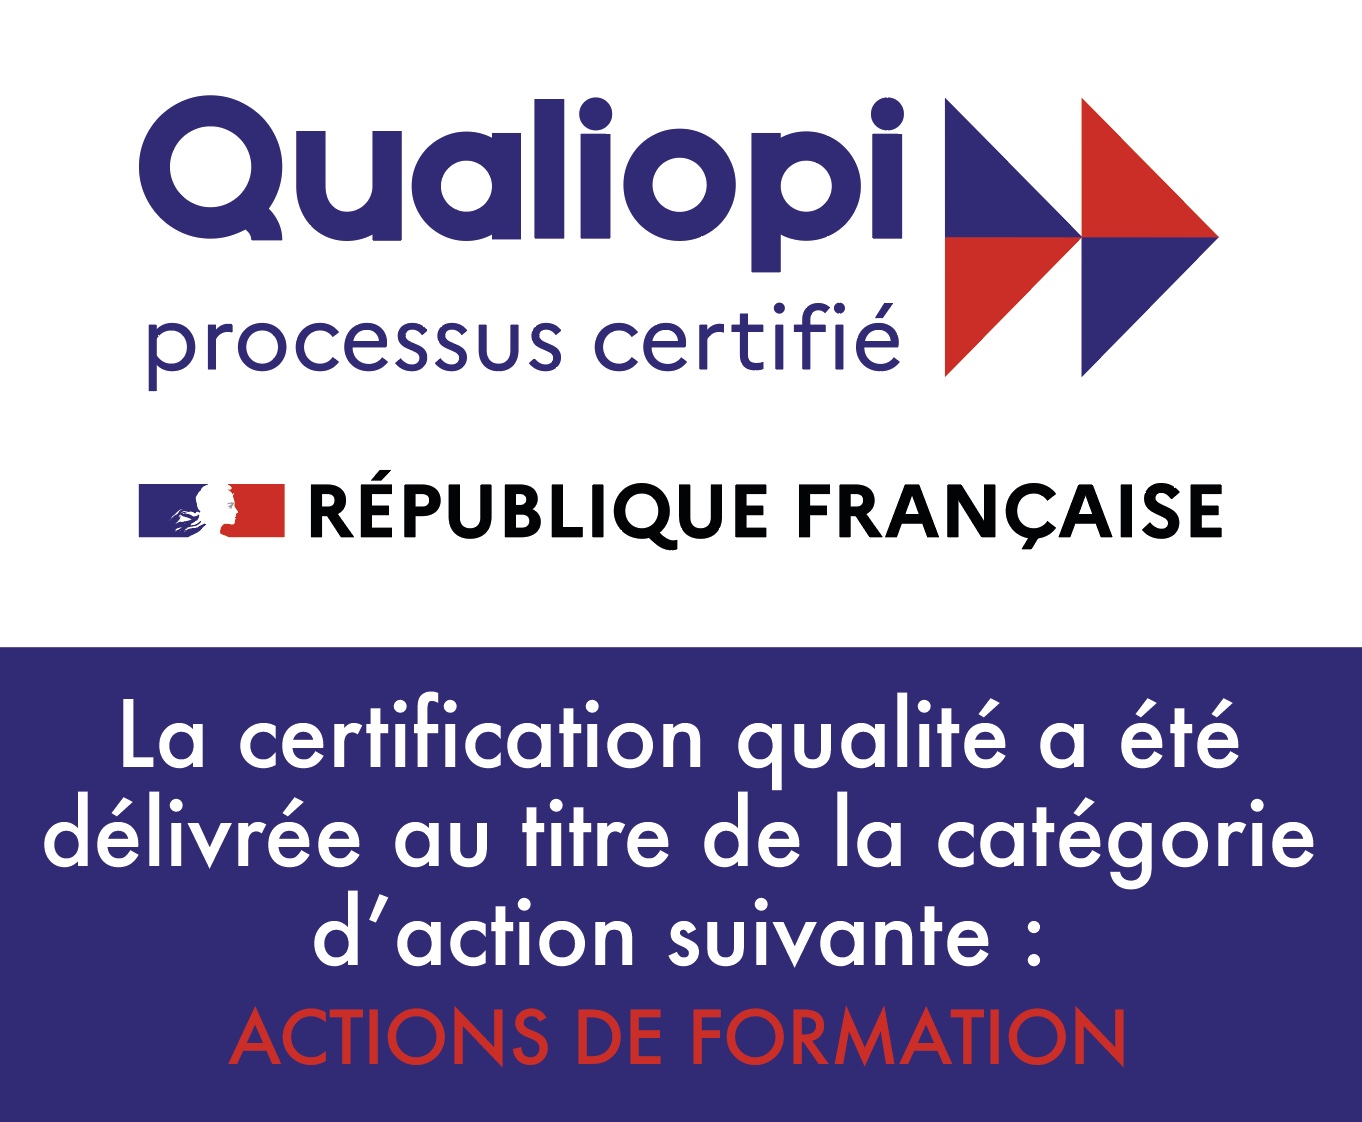 Certification qualiopi 